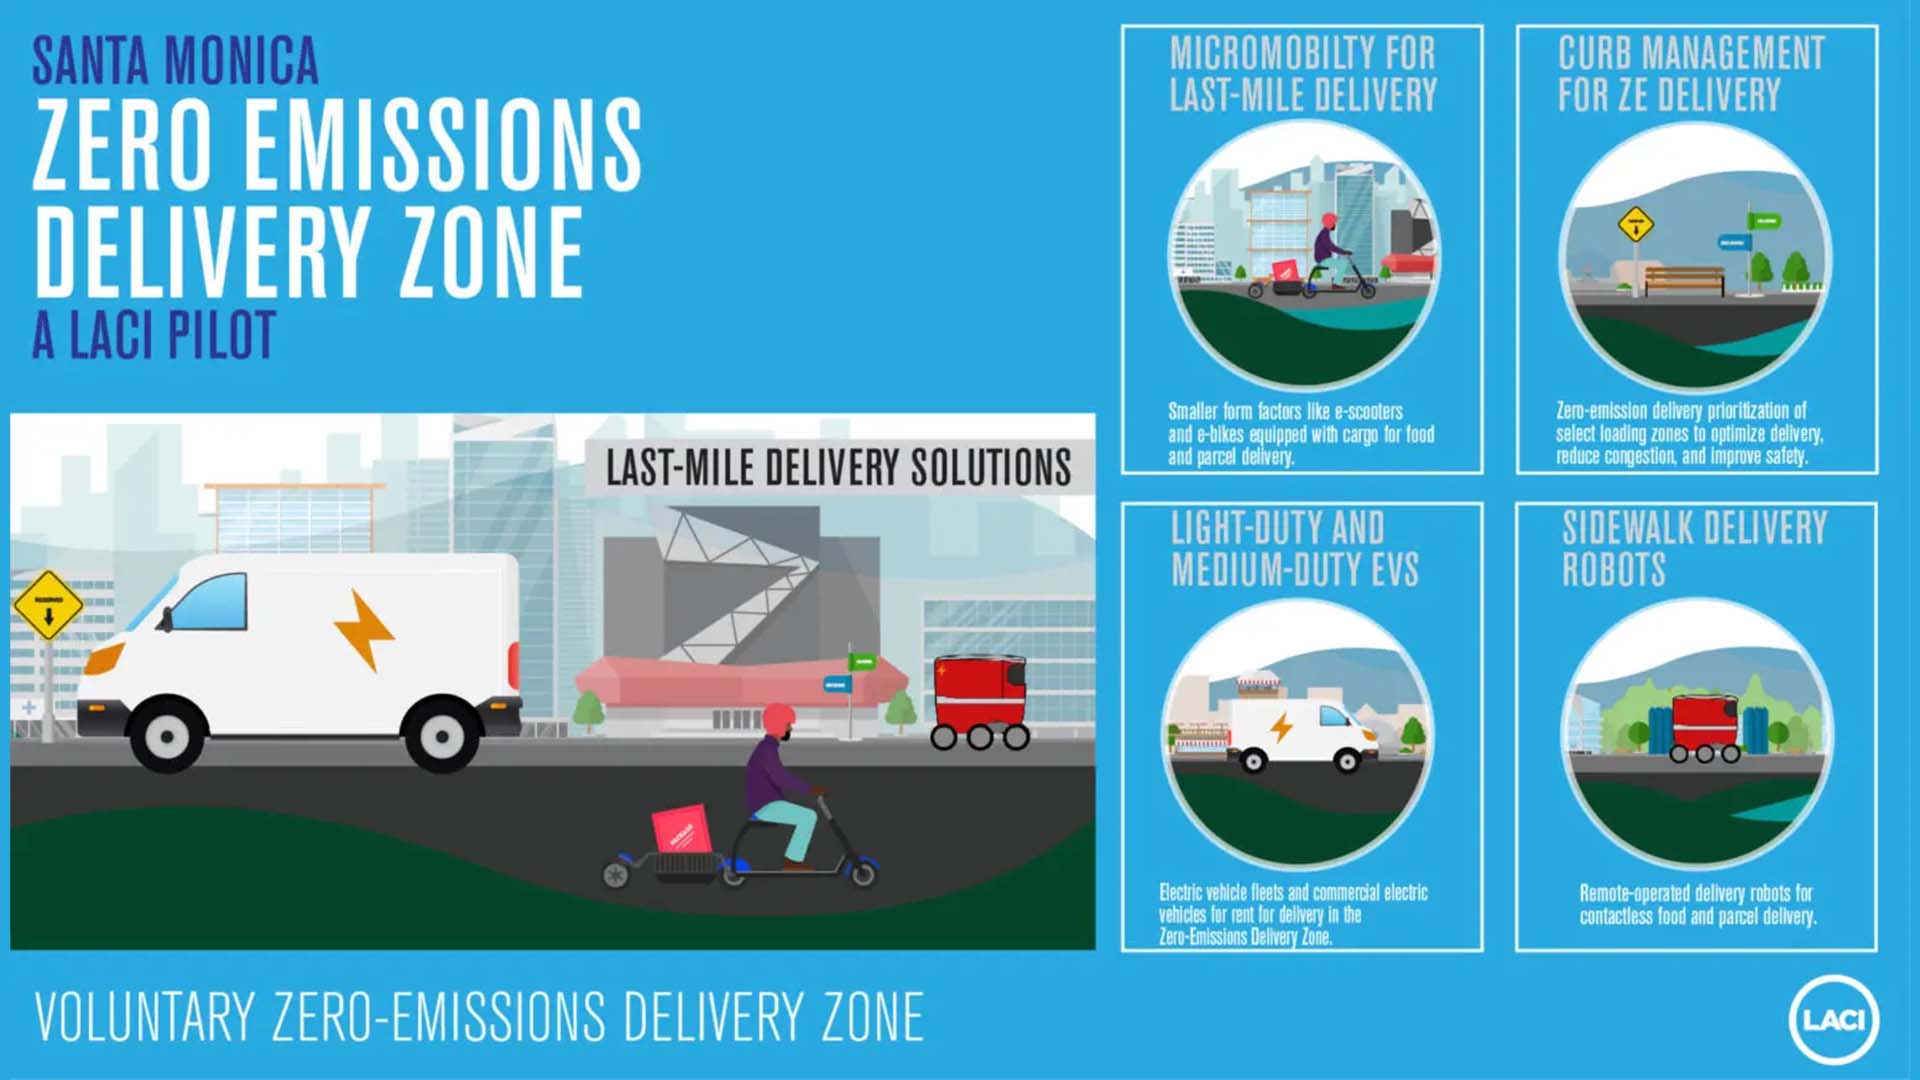 Santa Monica Zero Emissions Delivery Zone